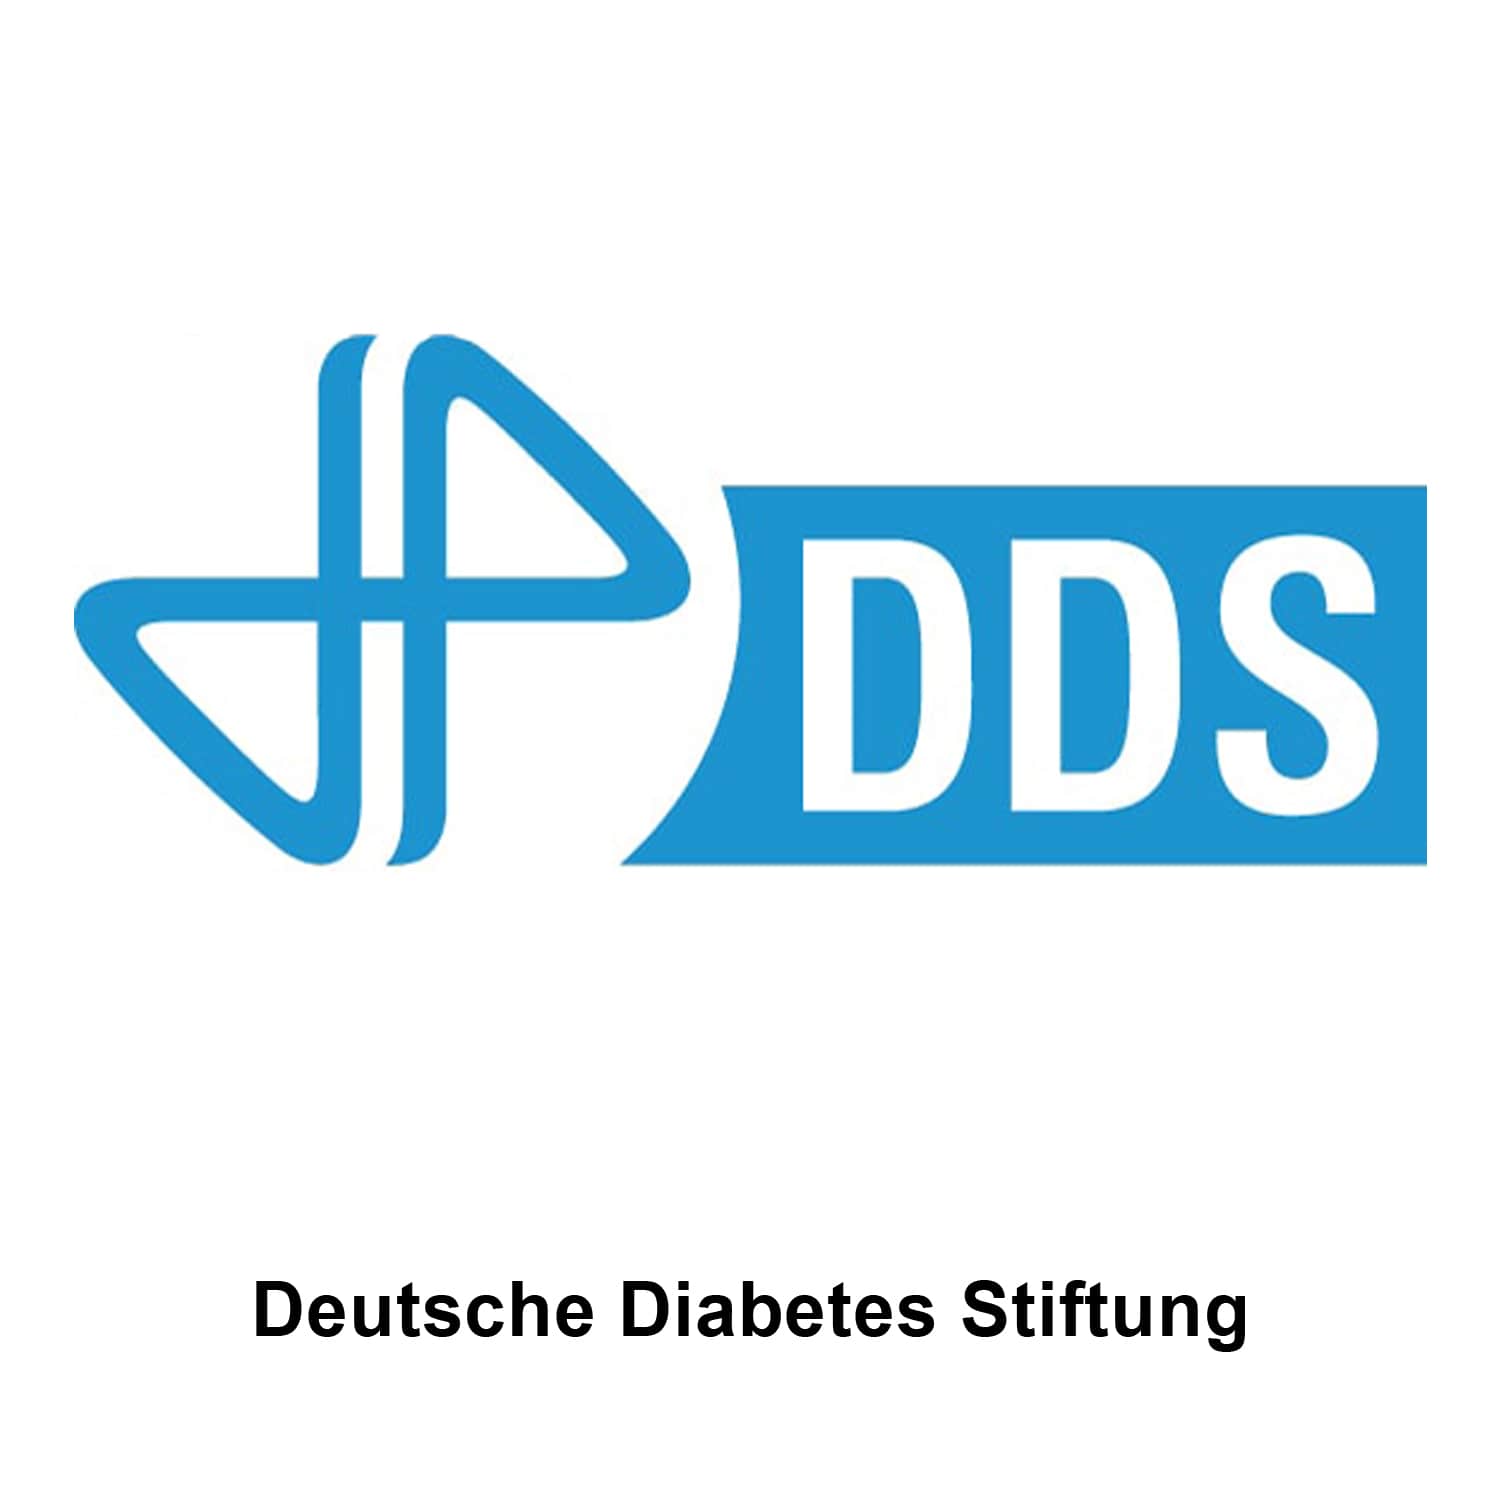 Deutsche Diabetes Stiftung - DDS